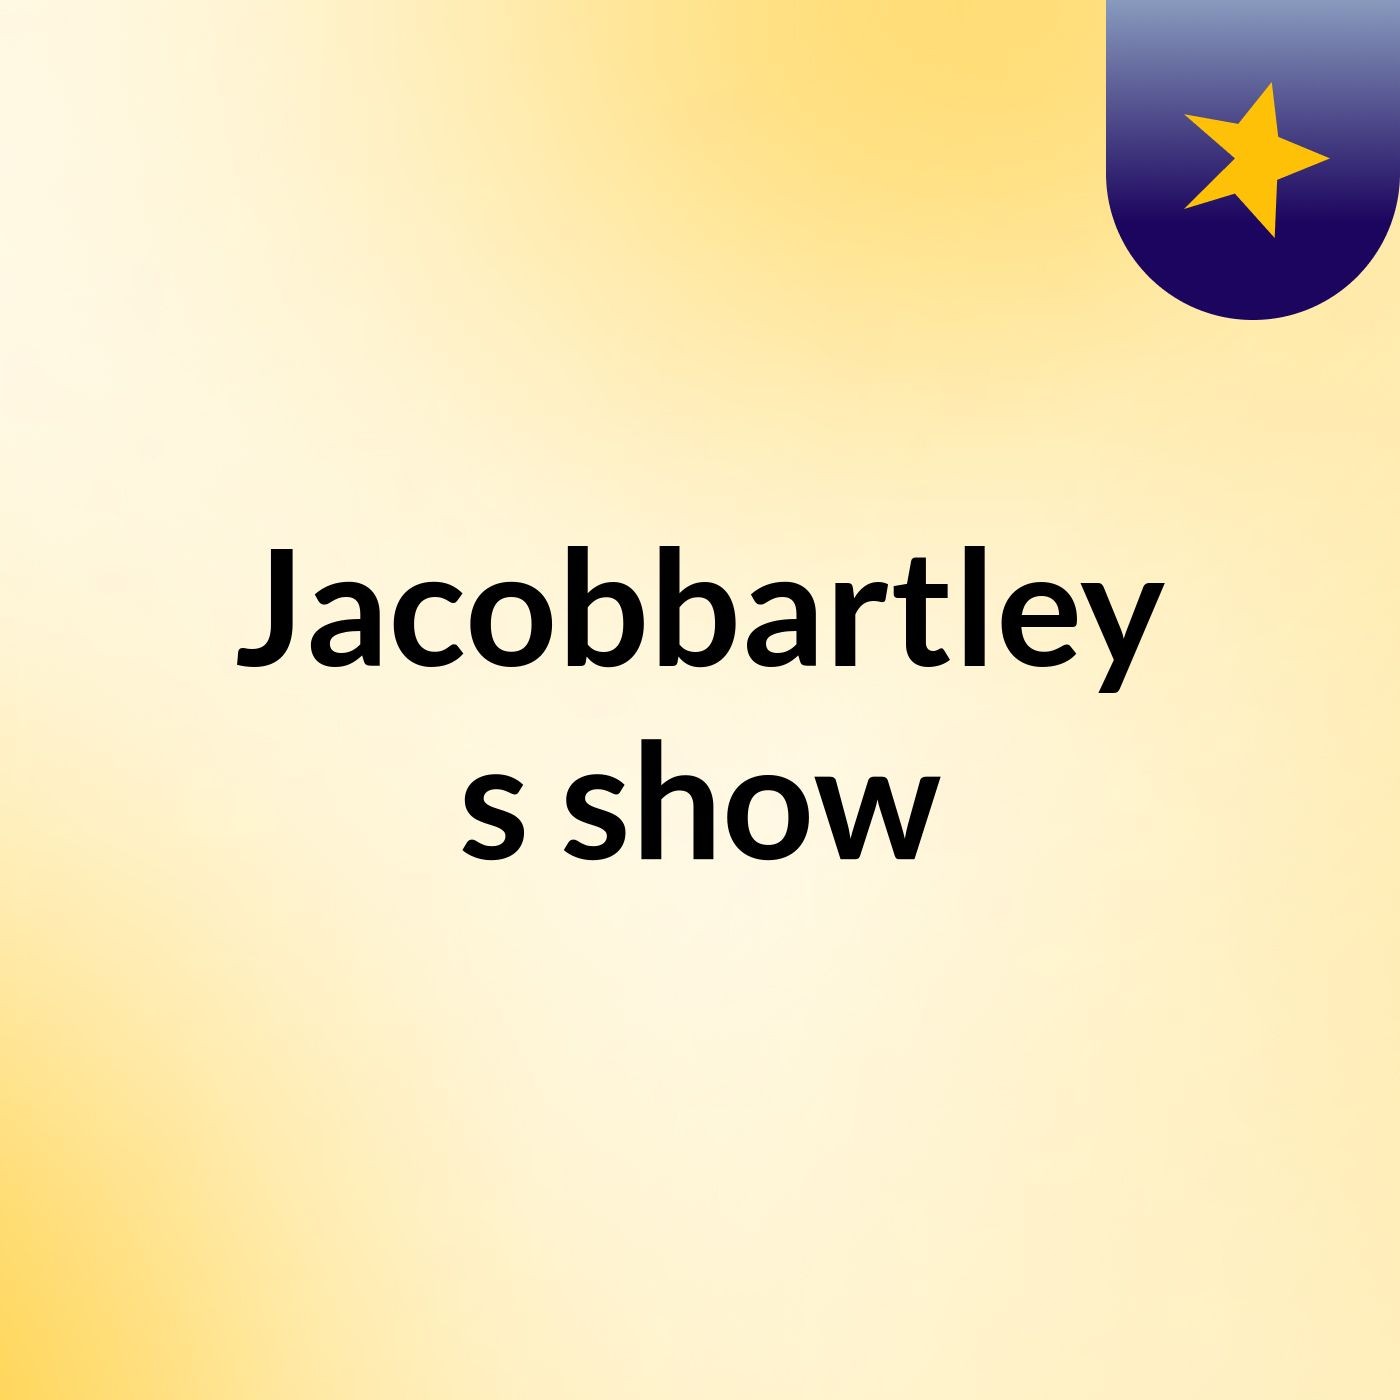 Episode 14 - Jacobbartley's show